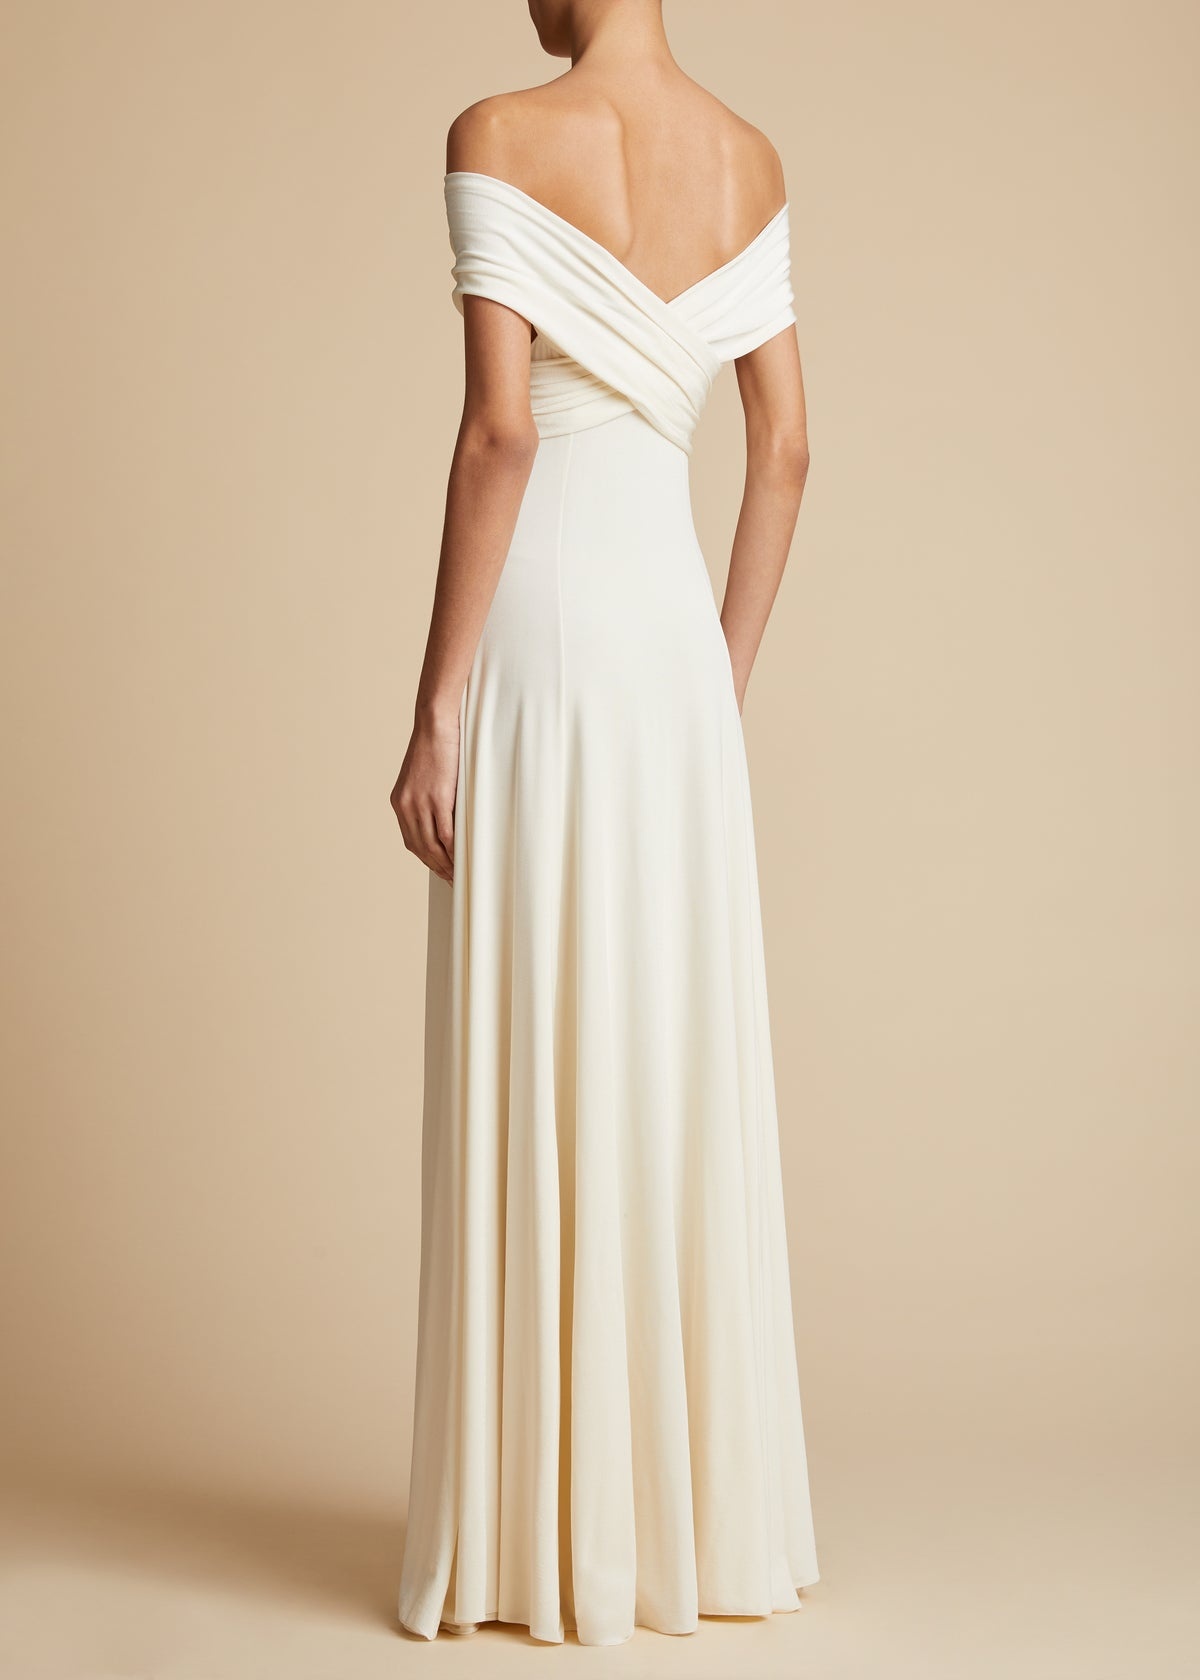 The Bruna Dress in Cream - 3